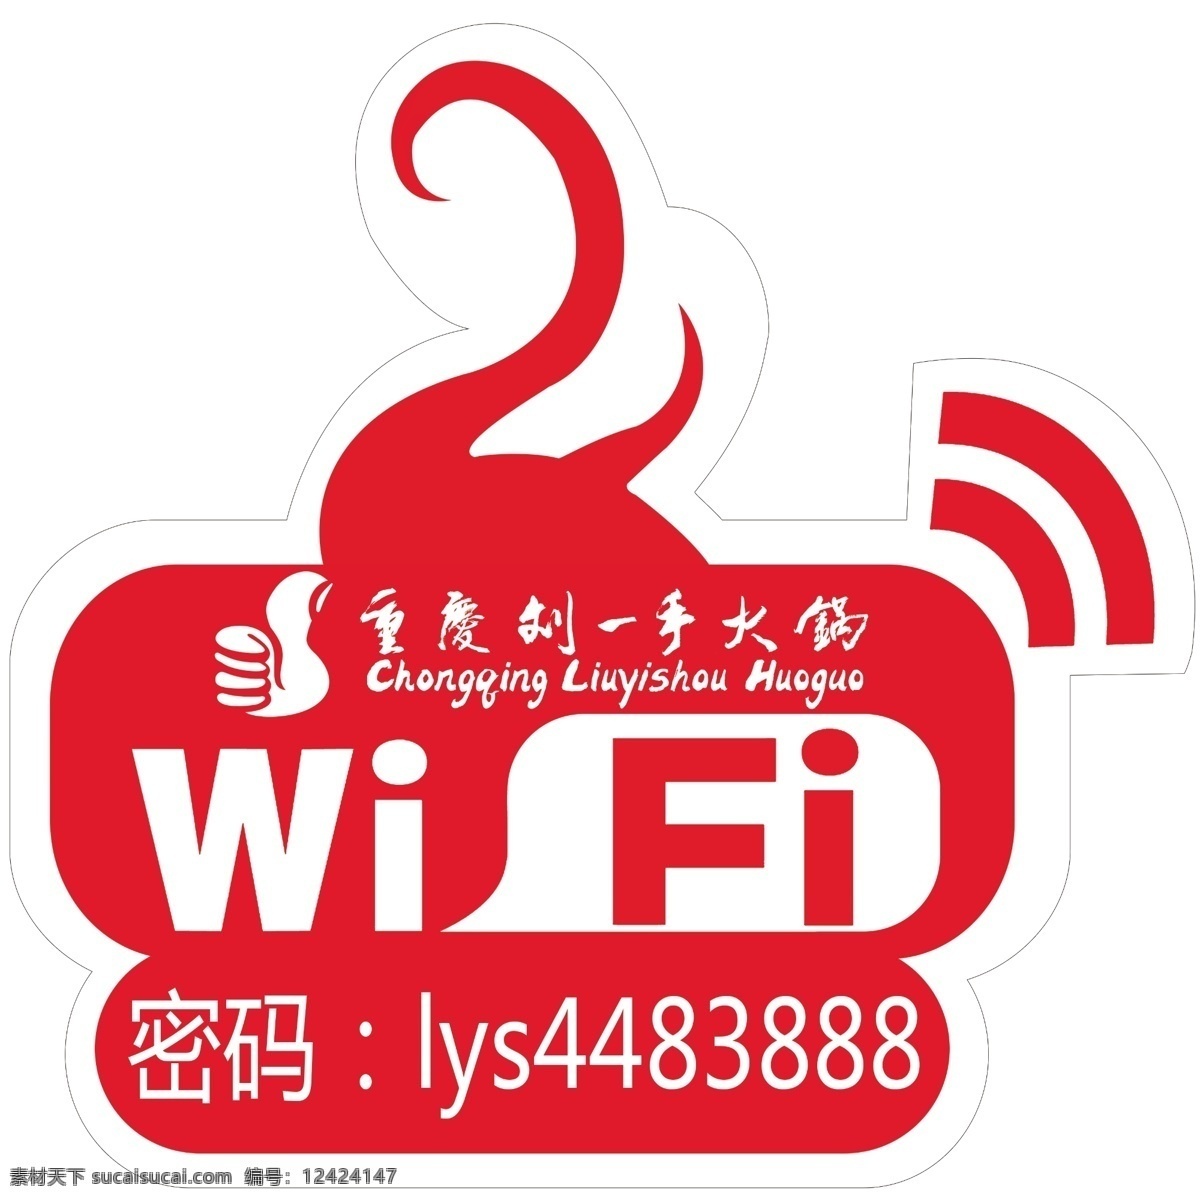 餐馆 无线 wifi 无线网 异形无线网 火锅店 无线网图案